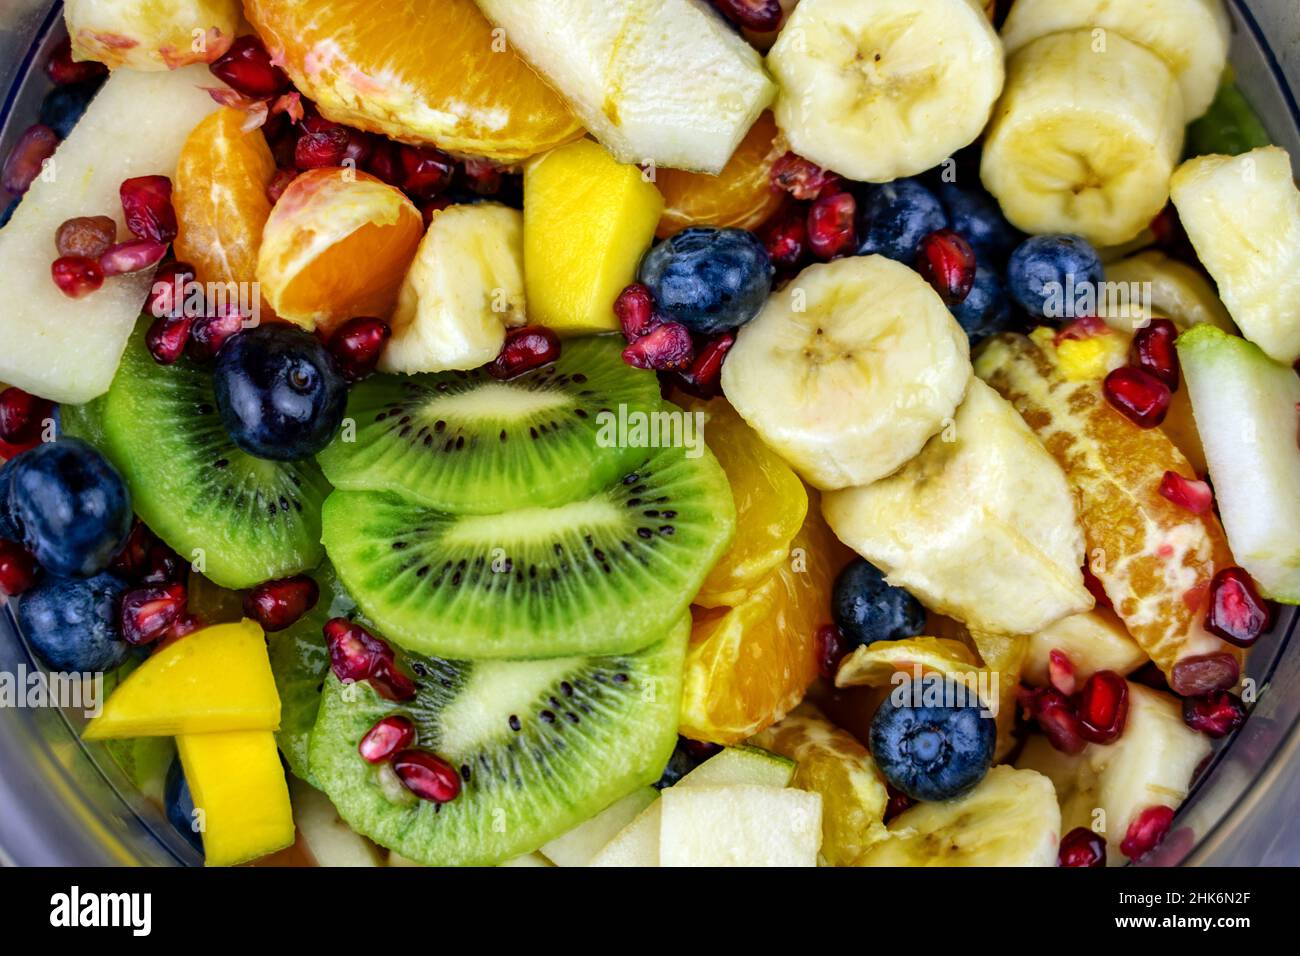 Nahaufnahme farbenfroher Obstsalat in einer Schüssel mit vielen verschiedenen Obstsorten wie Kiwi-Banane und Heidelbeeren Stockfoto